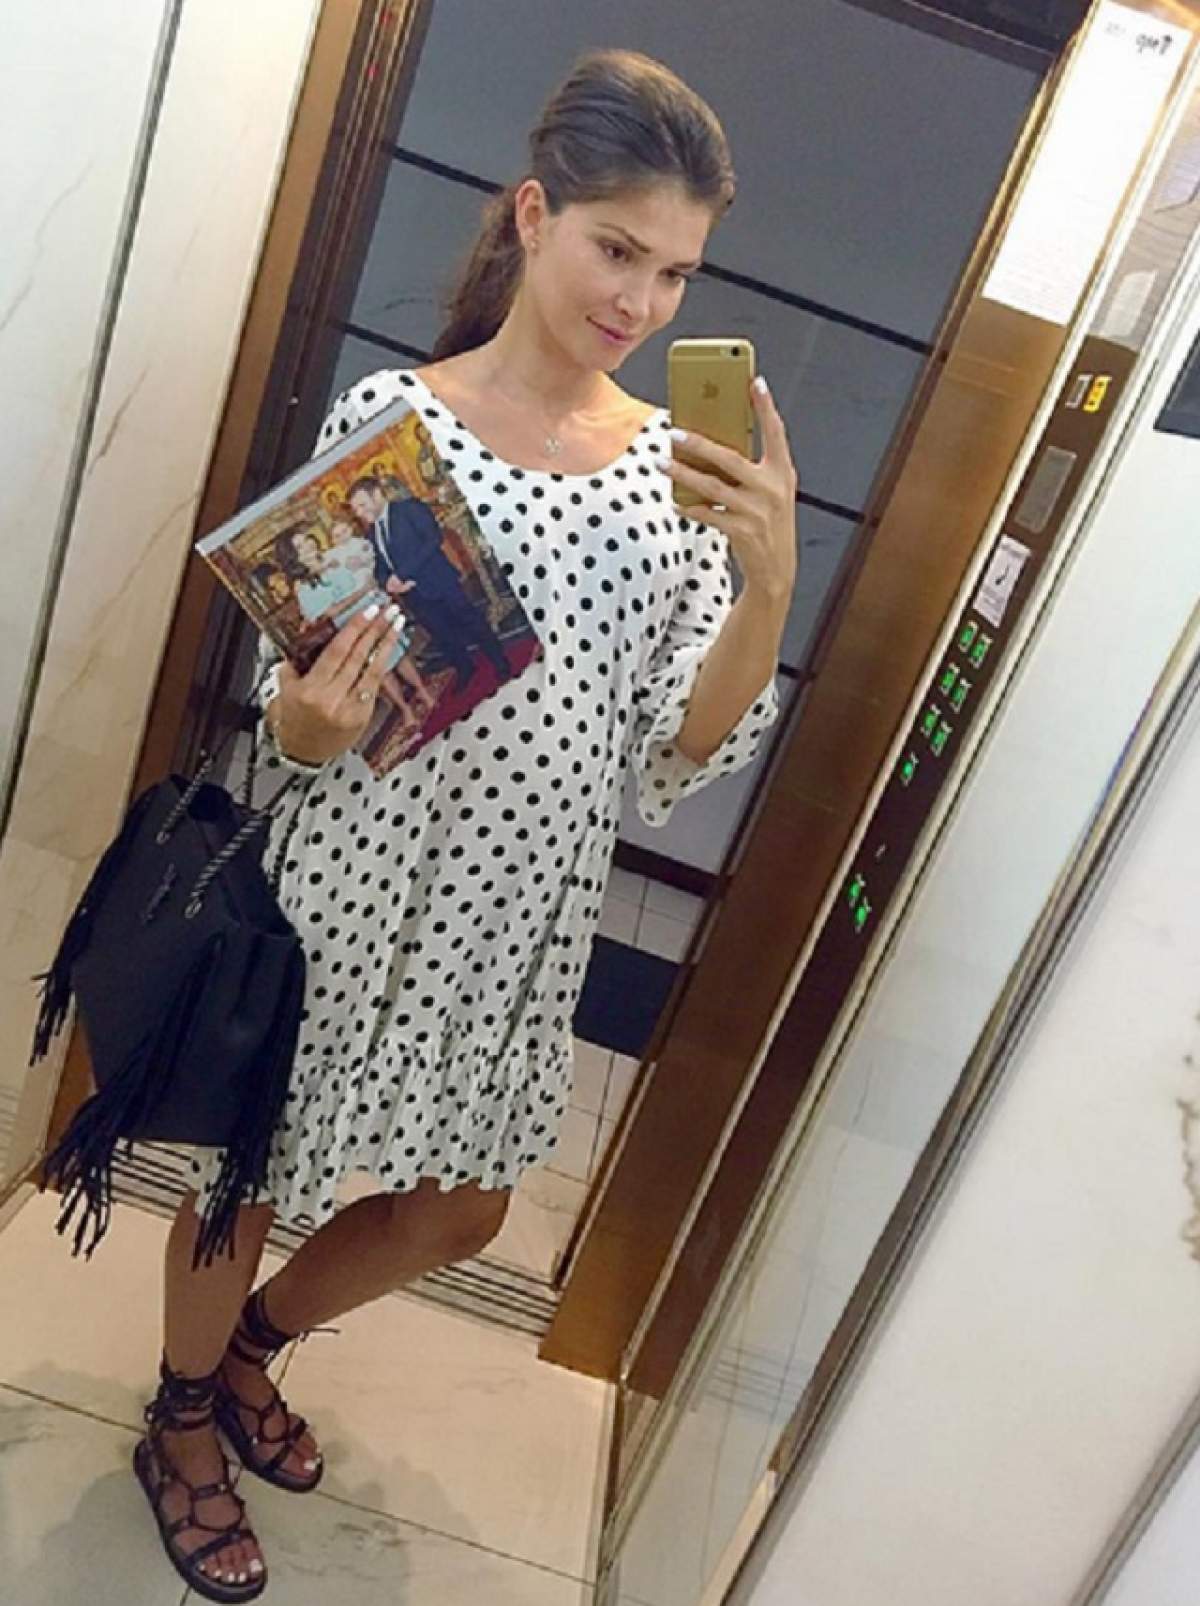 Creşte burta, creşte! Alina Puşcaş, selfie de gravidă cu băieţelul în braţe: "Amândoi se fac mari foarte repede"